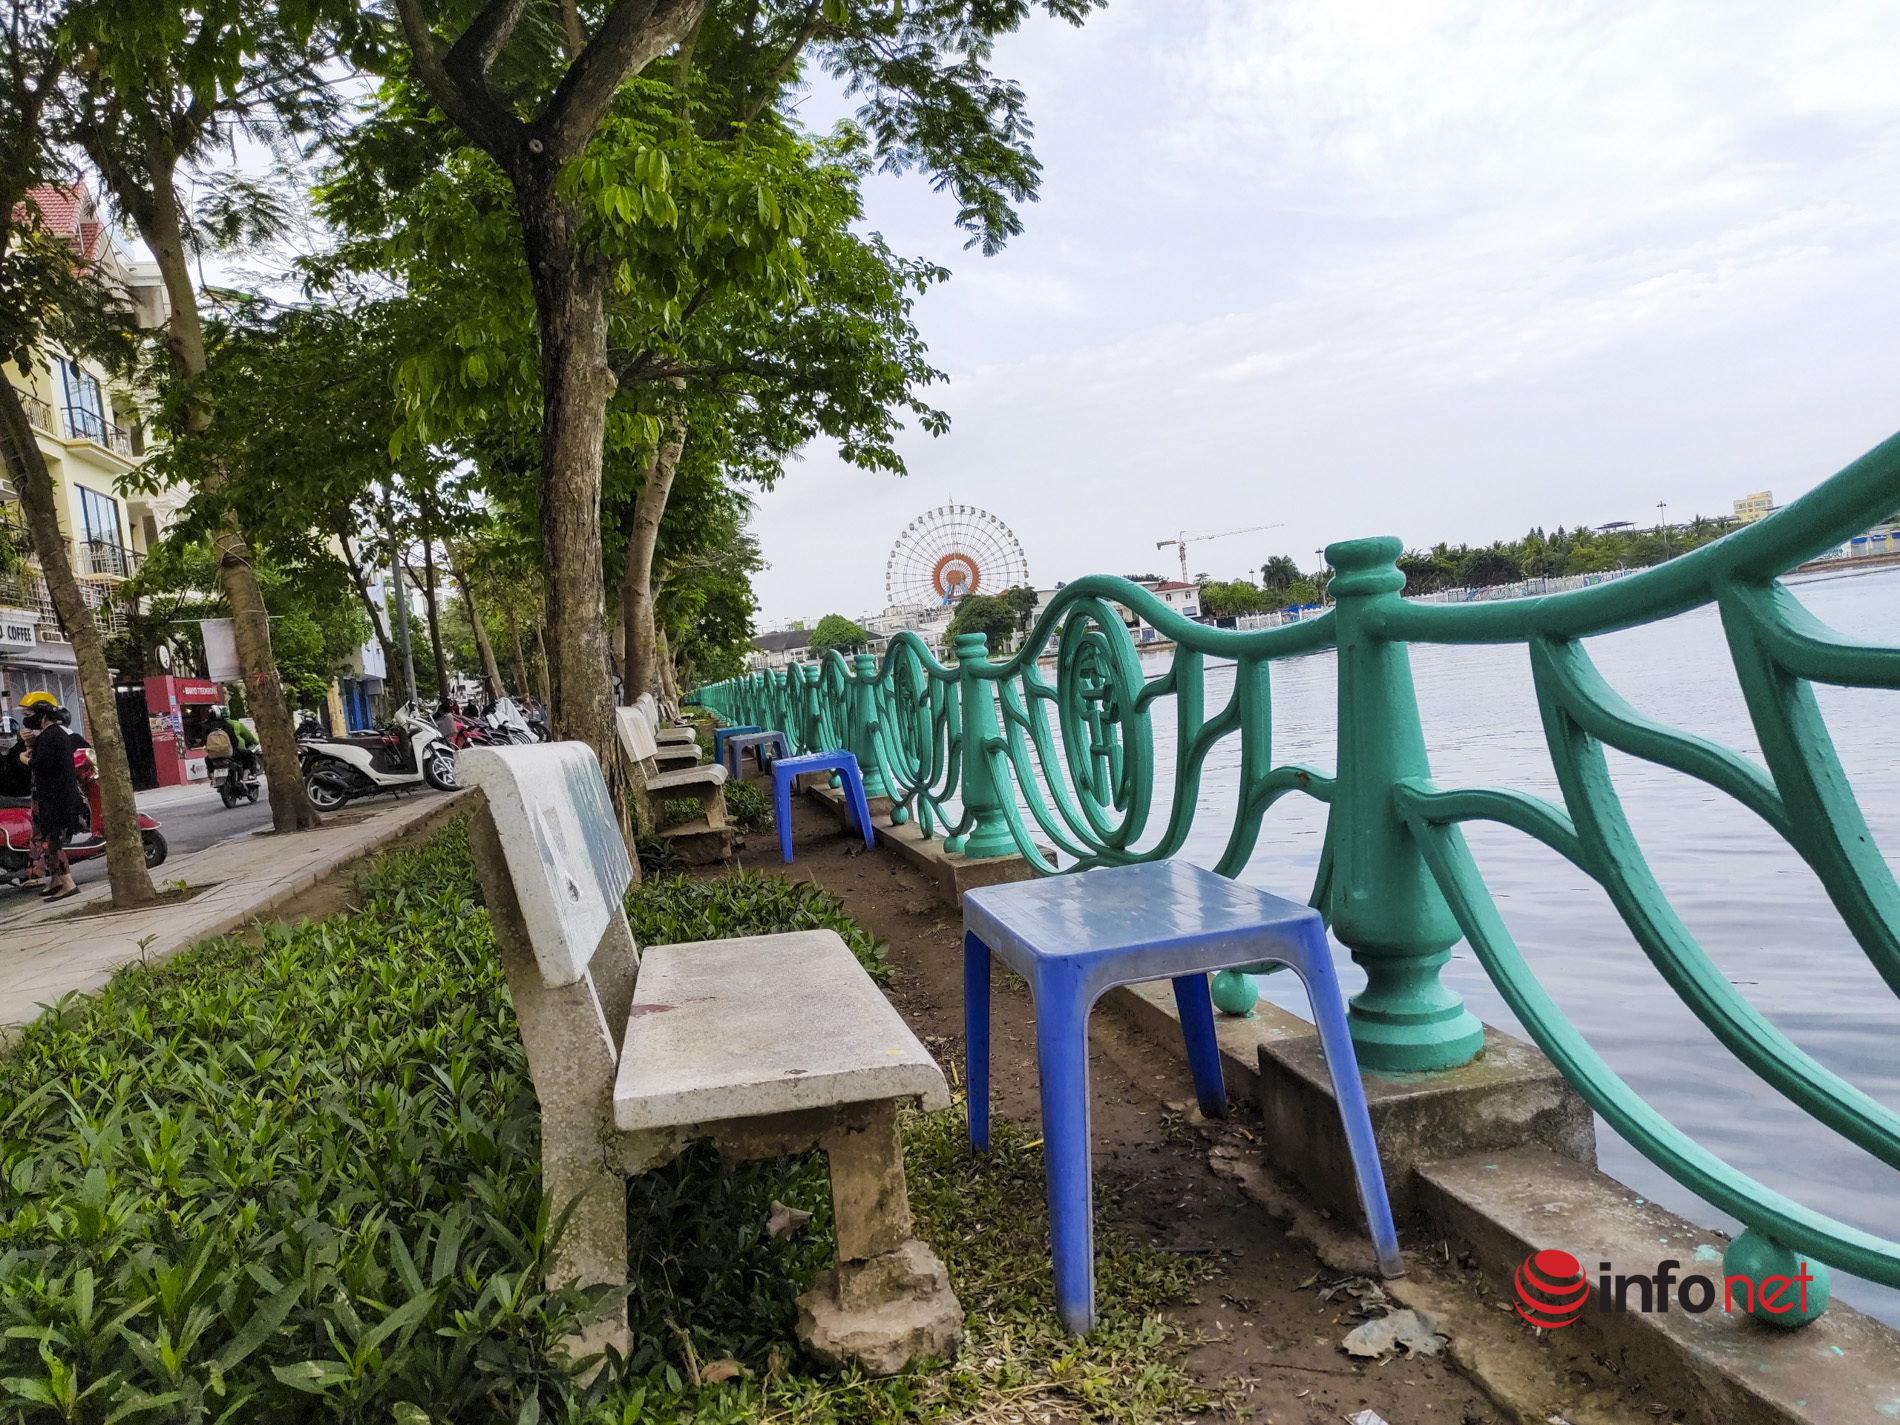 Xếp ghế che ô như bãi biển ven hồ Tây, ghế đá công cộng muốn ngồi phải trả tiền mua nước